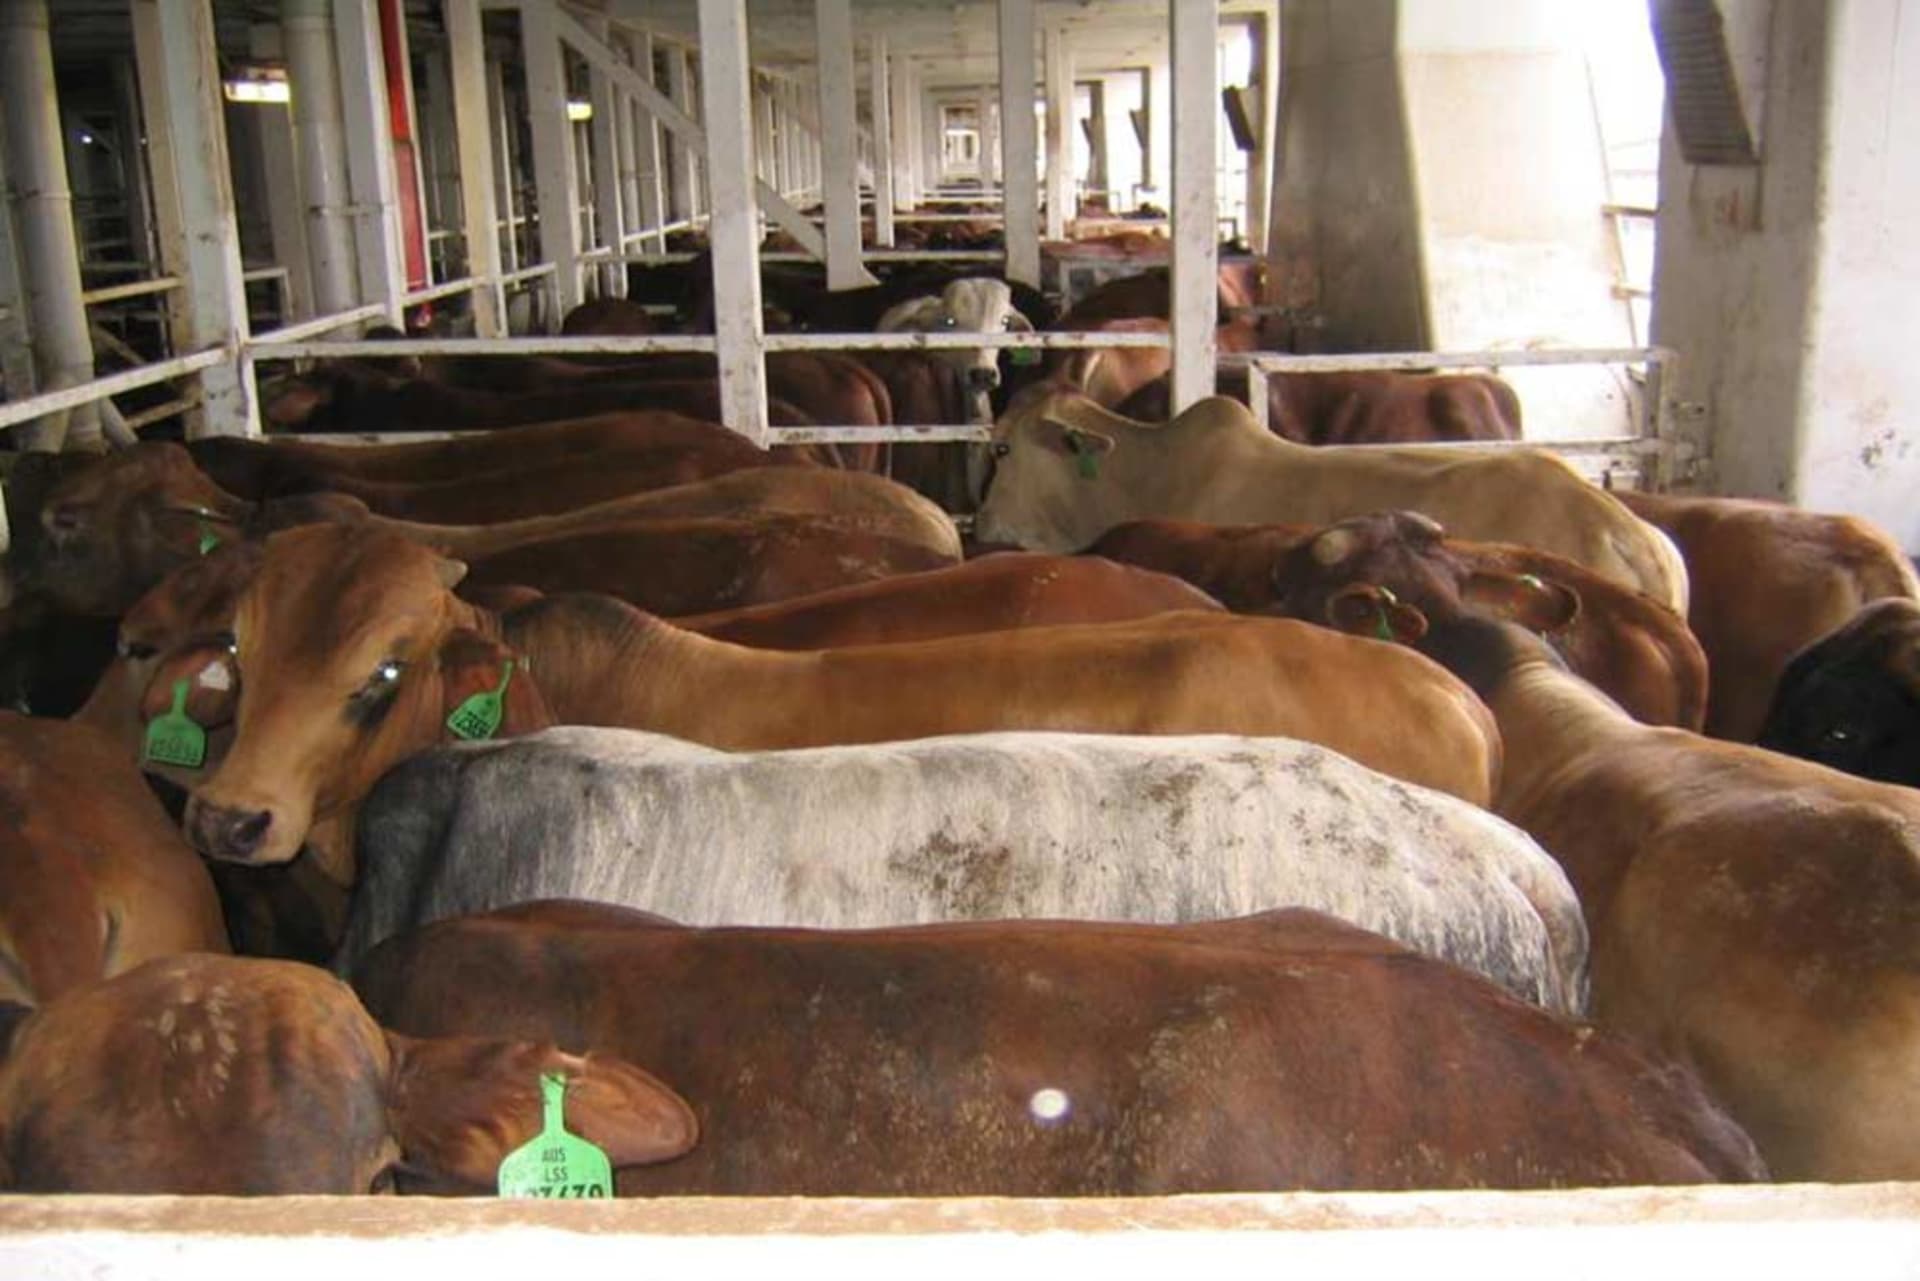 Podmínky na přepravních lodích dlouhodobě kritizují ochránci zvířat. Podle nich čekala většina krav na palubě mláďata.